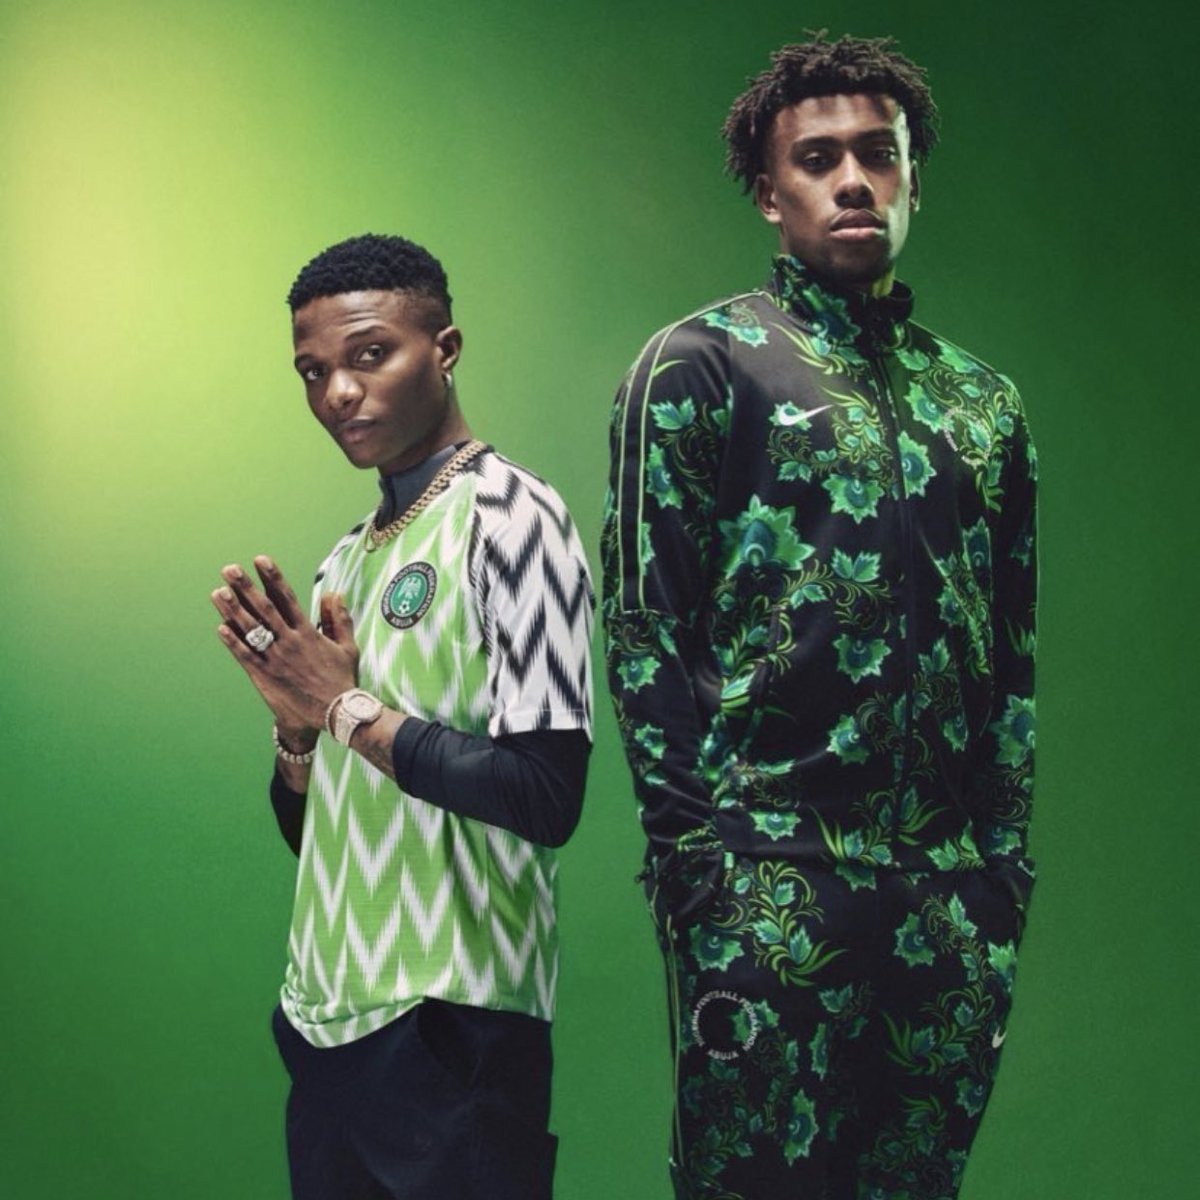 Cementerio aluminio Velo David De las Heras on Twitter: "Así es la nueva equipación de Nigeria para  el Mundial 2018. Discretita. 😅 https://t.co/swbQjgup9C" / Twitter